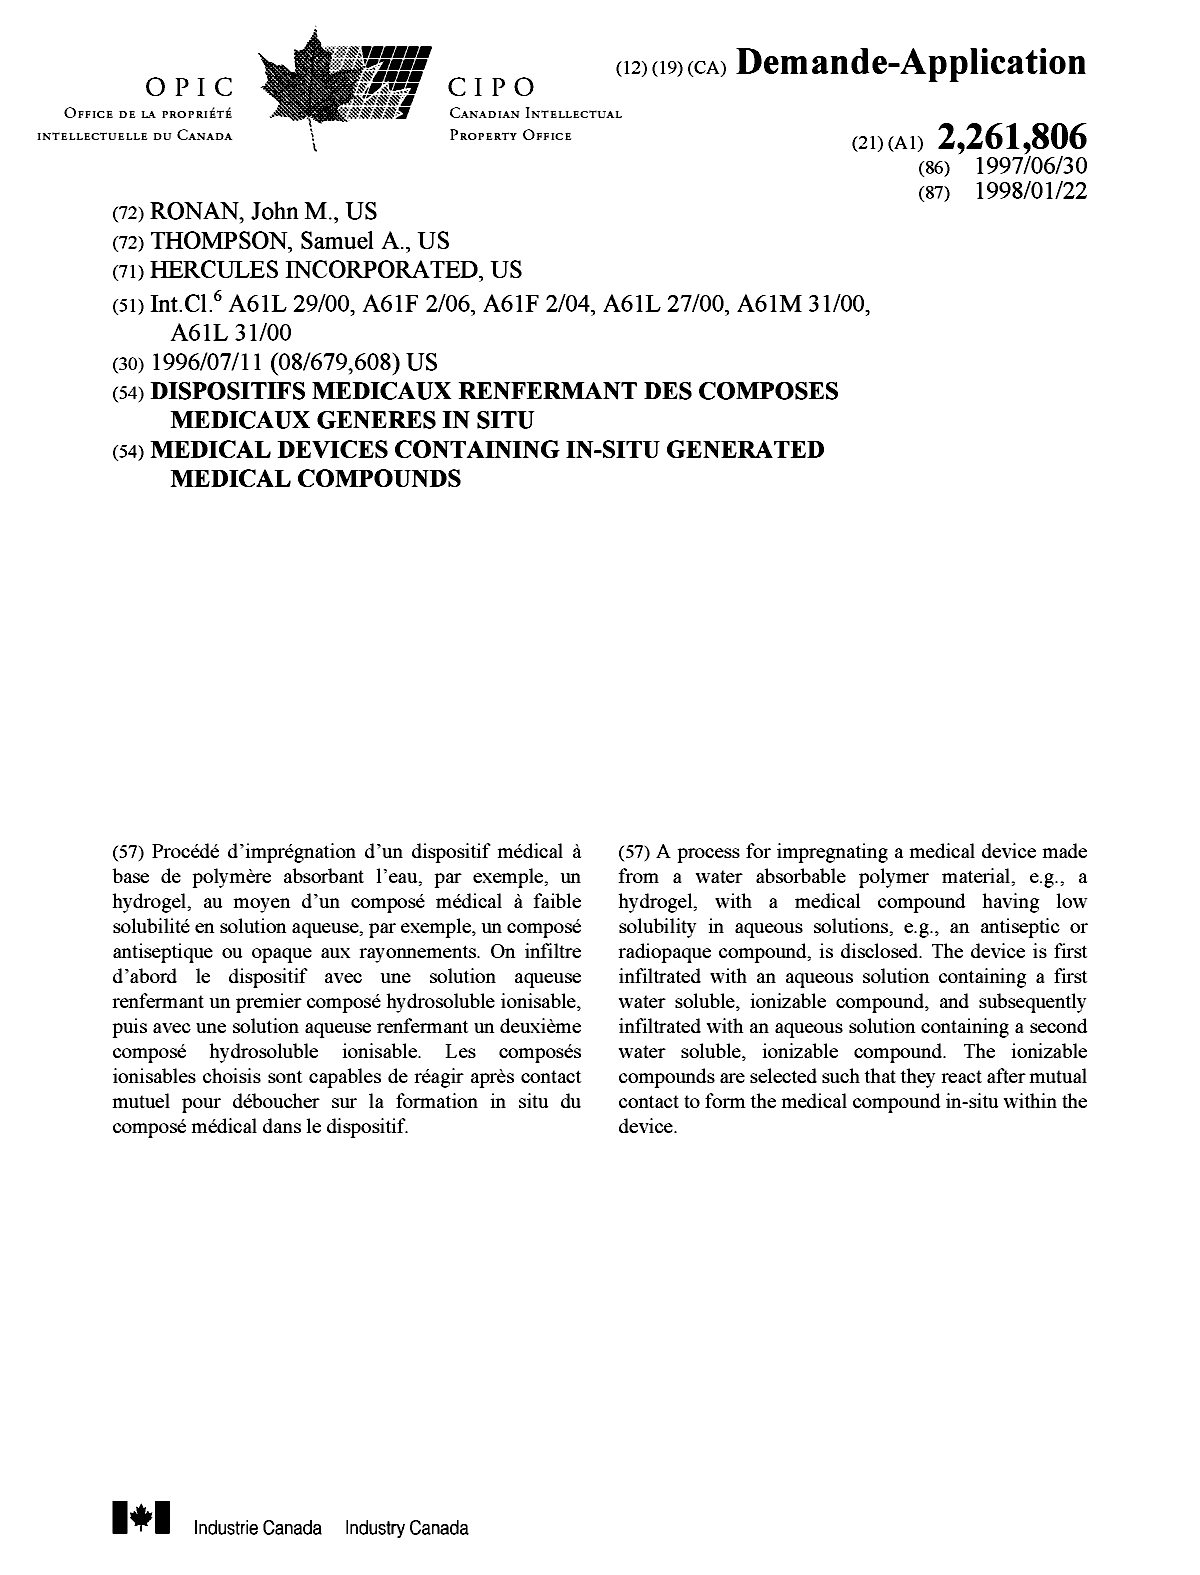 Document de brevet canadien 2261806. Page couverture 19990419. Image 1 de 1